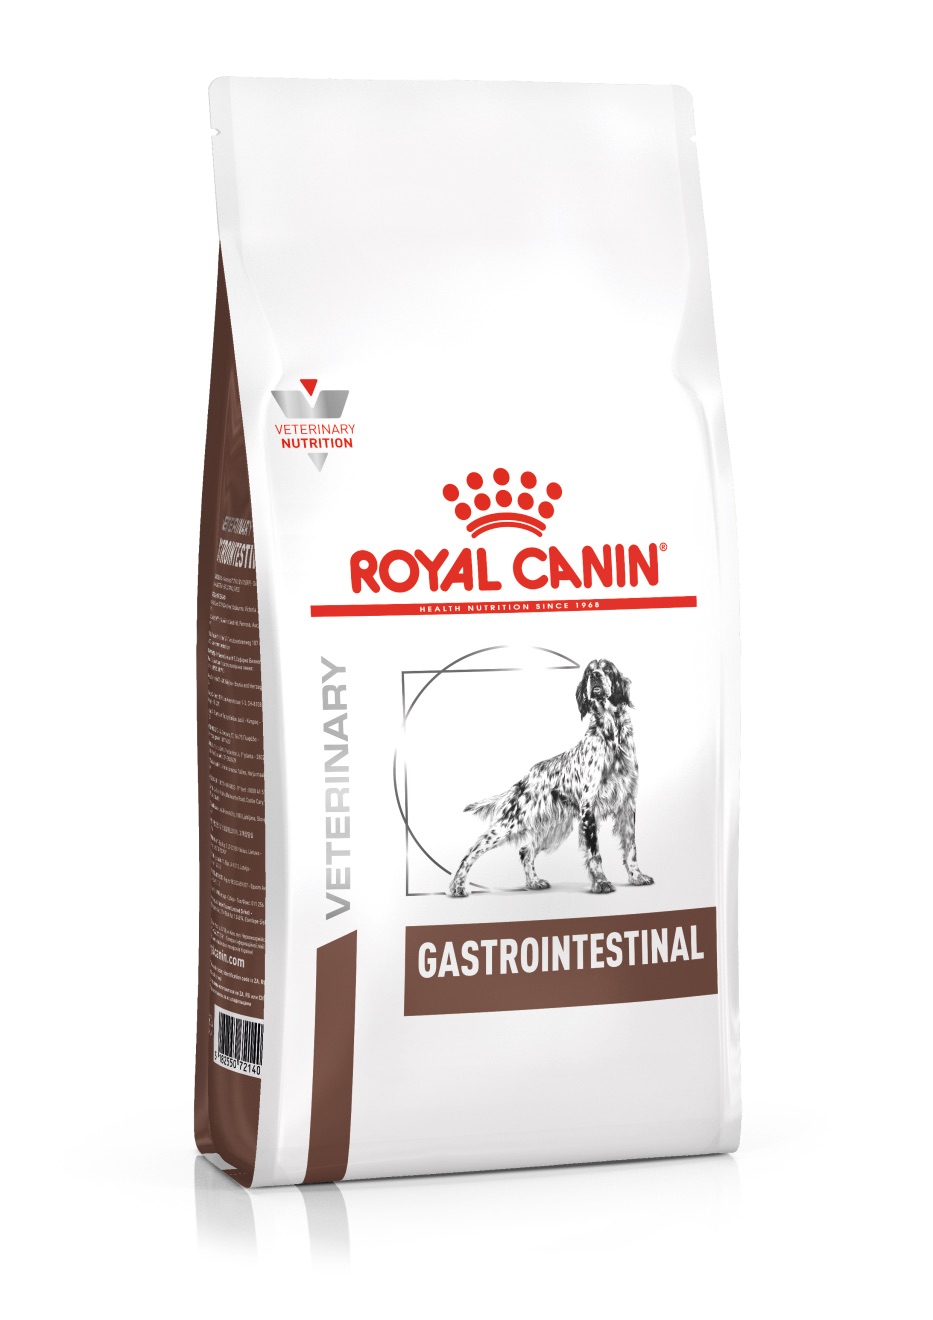 Gewend aan spleet Verzadigen Royal Canin gastro Intestinal™ - Voor volwassen honden met darmproblemen /  Direct-Dierenarts